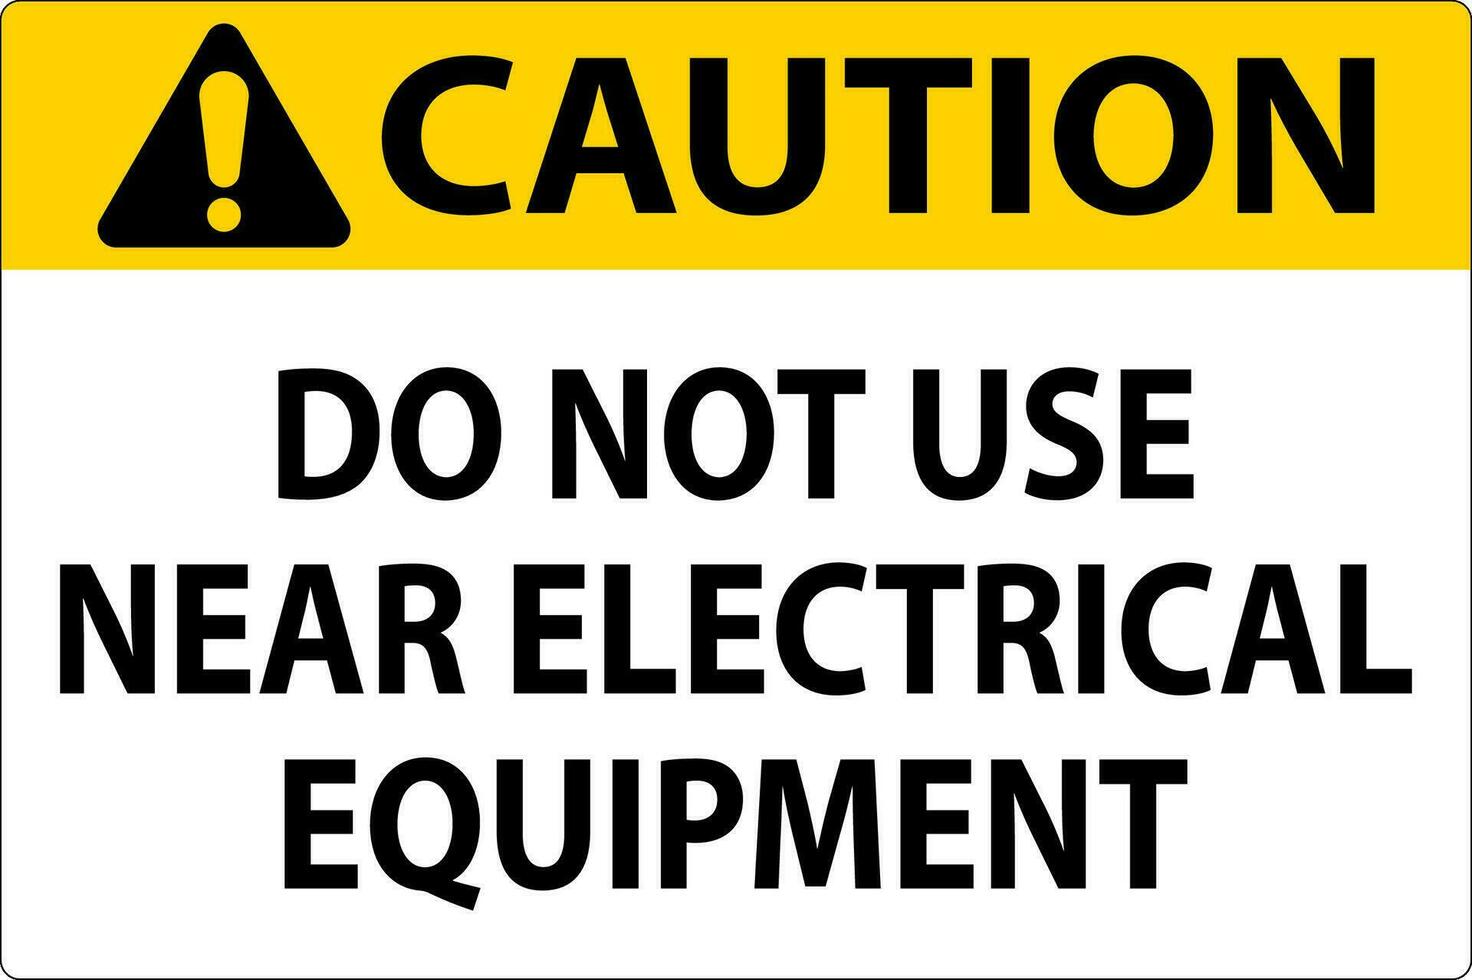 voorzichtigheid Doen niet gebruik in de buurt elektrisch uitrusting vector